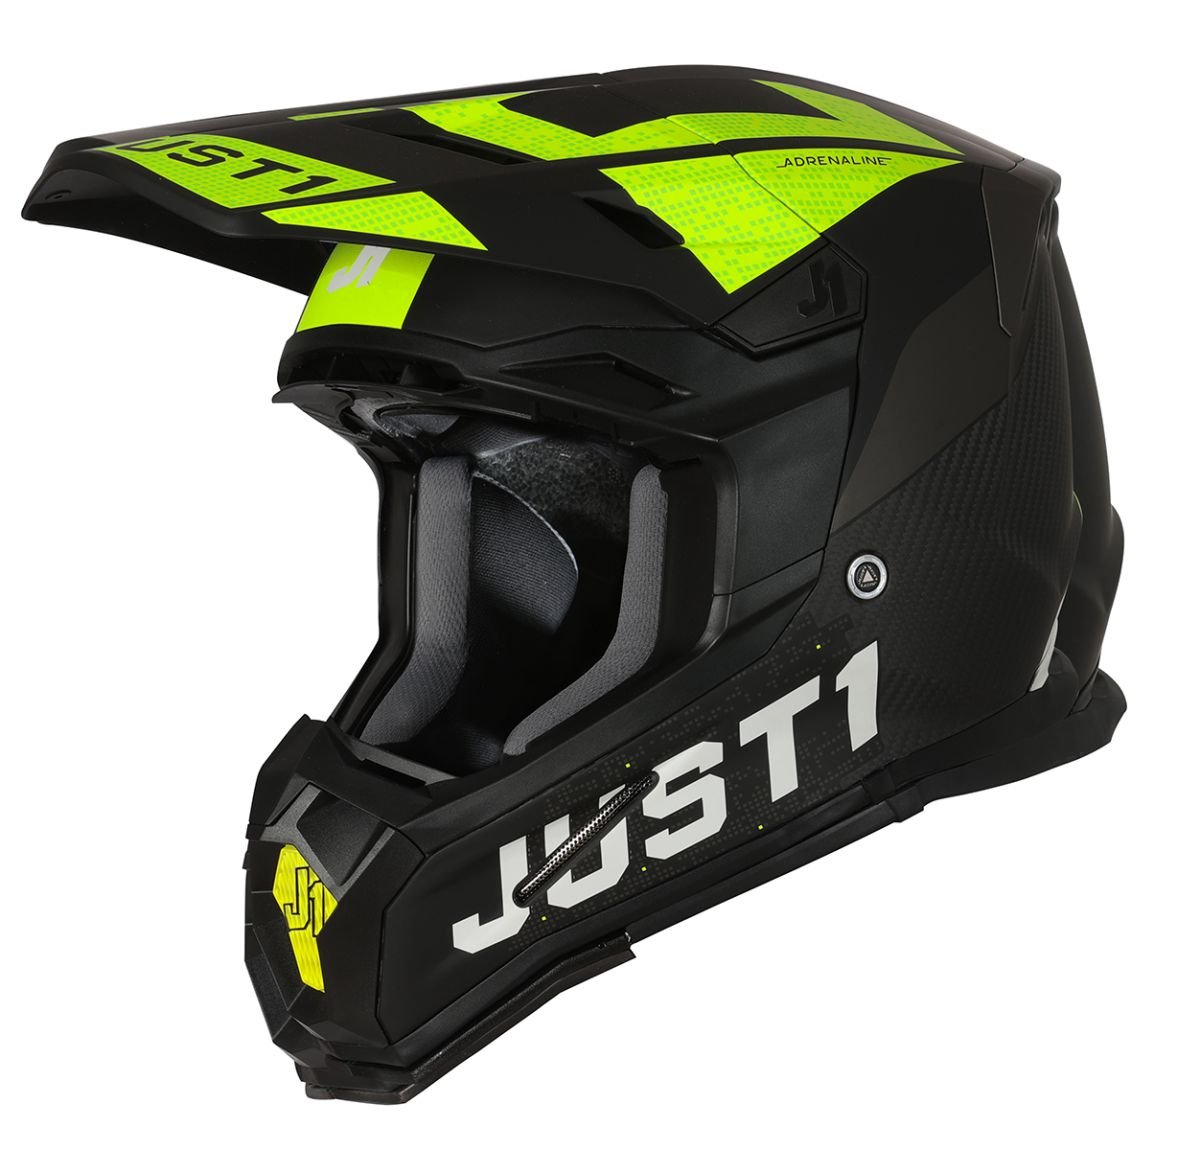 Image of Just1 Helmet J-22 Adrenaline Black Yellow Fluo Carbon Matt Offroad Helmet Size XL ID 8055727450340